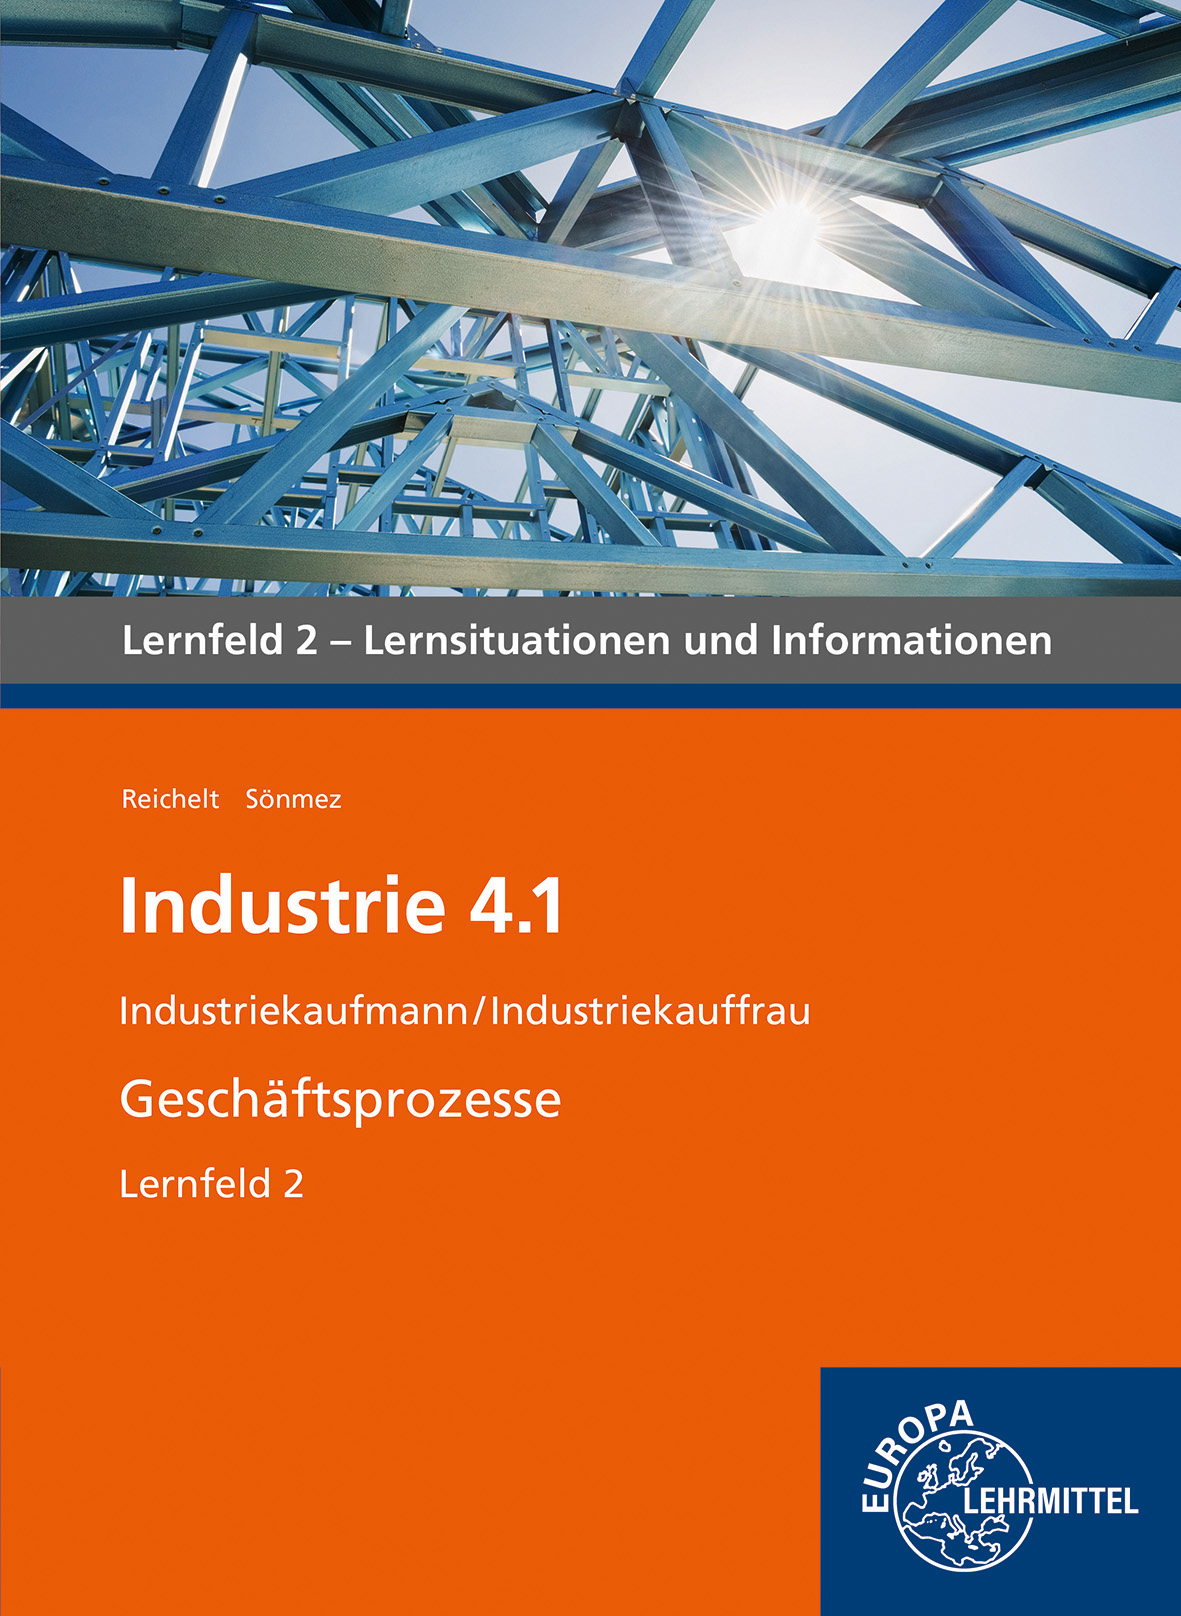 Industrie 4.1 - Geschäftsprozesse Lernfeld 2